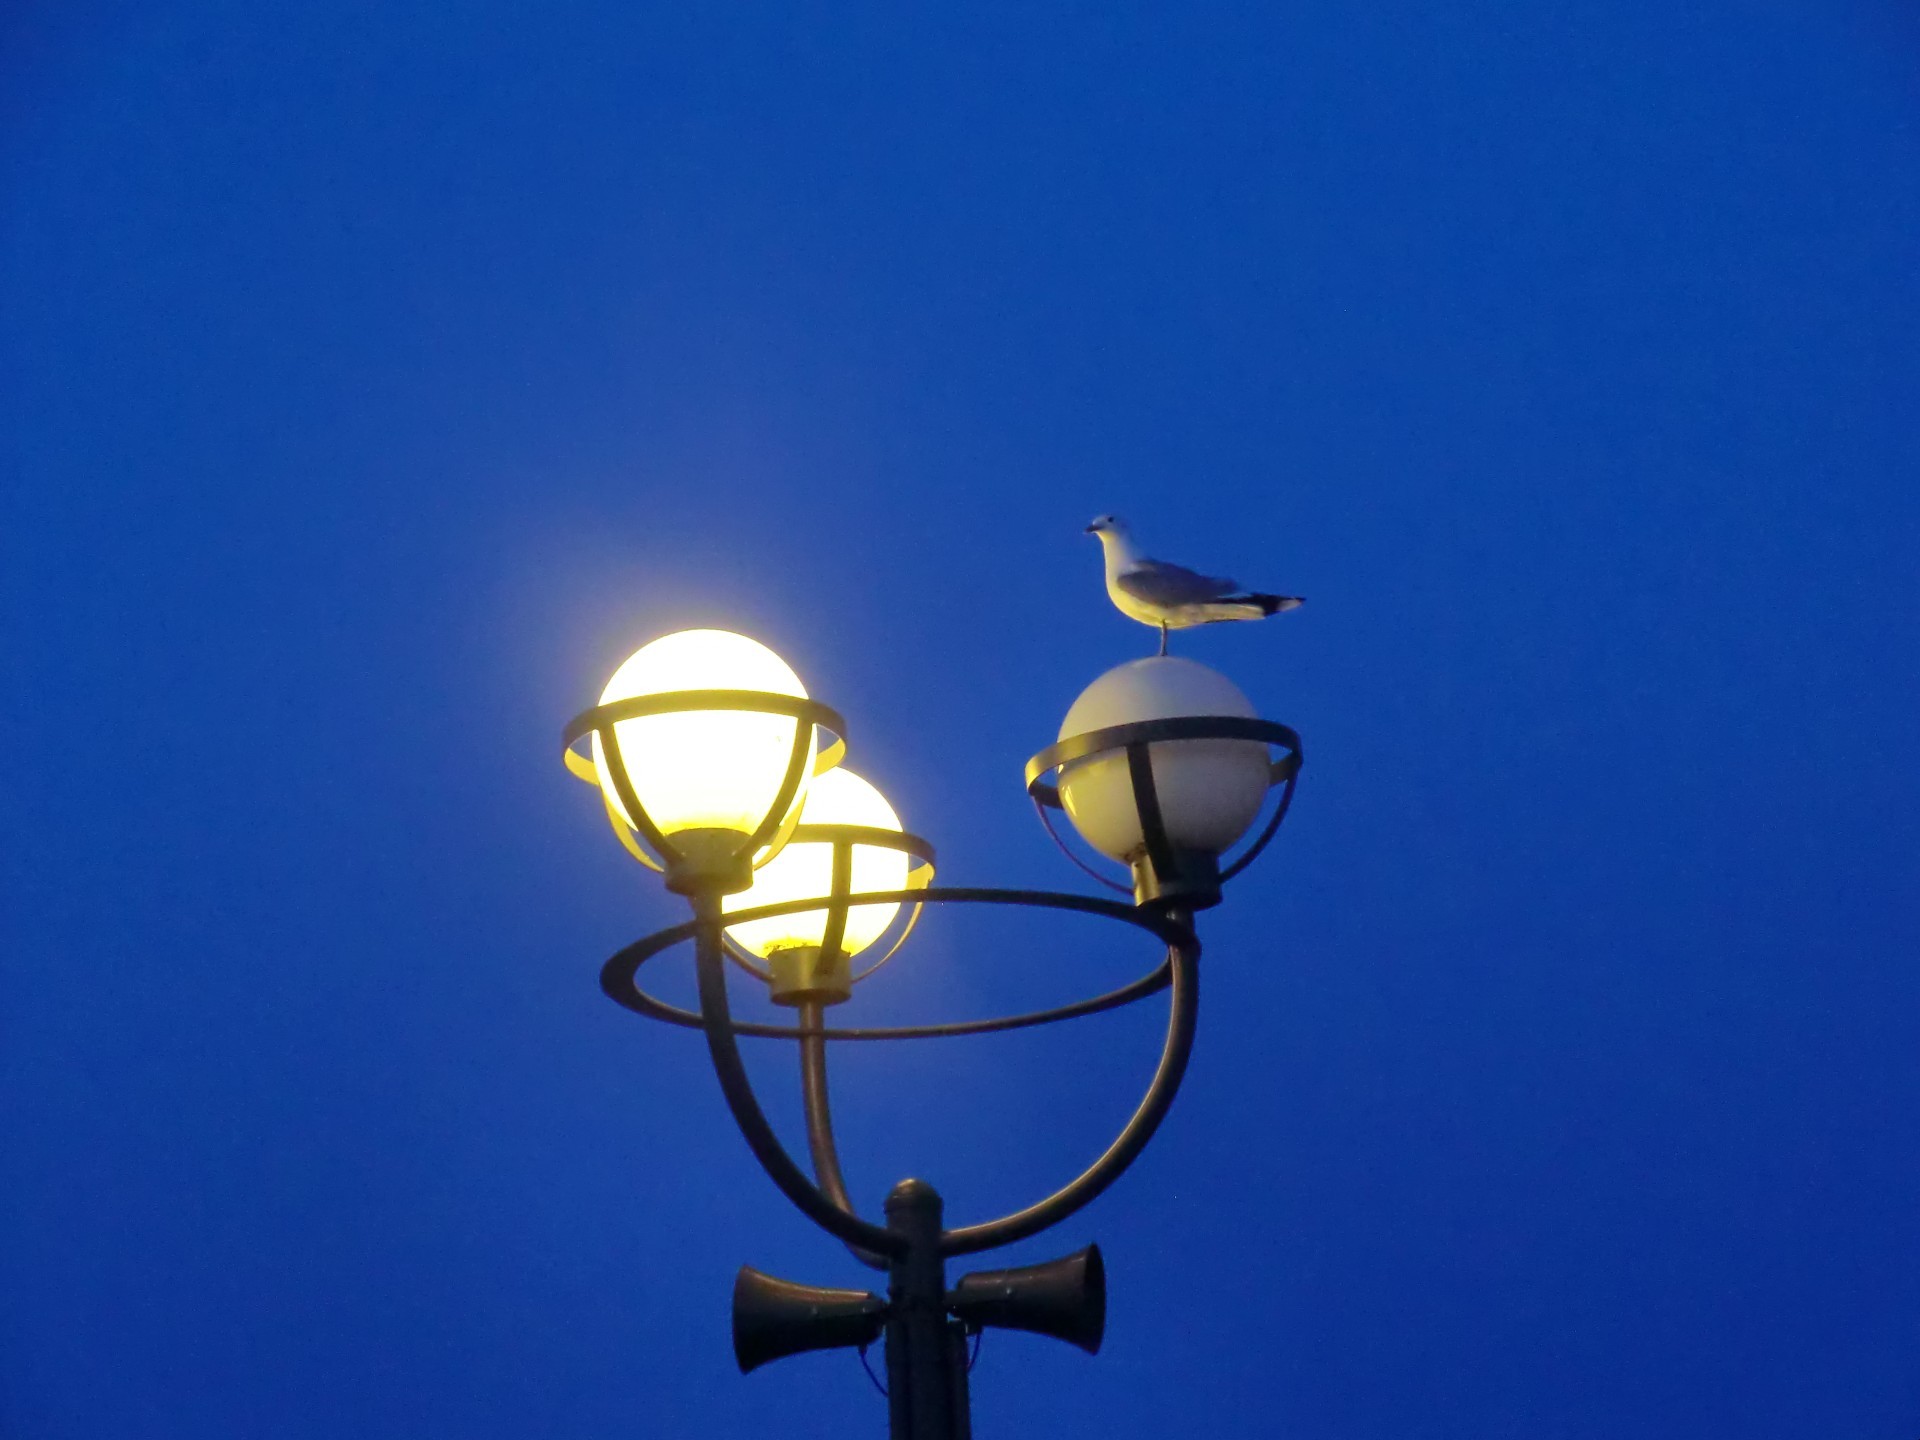 waterfowl lamp sky light bright lantern sun streetlight outdoors high illuminated lamppost